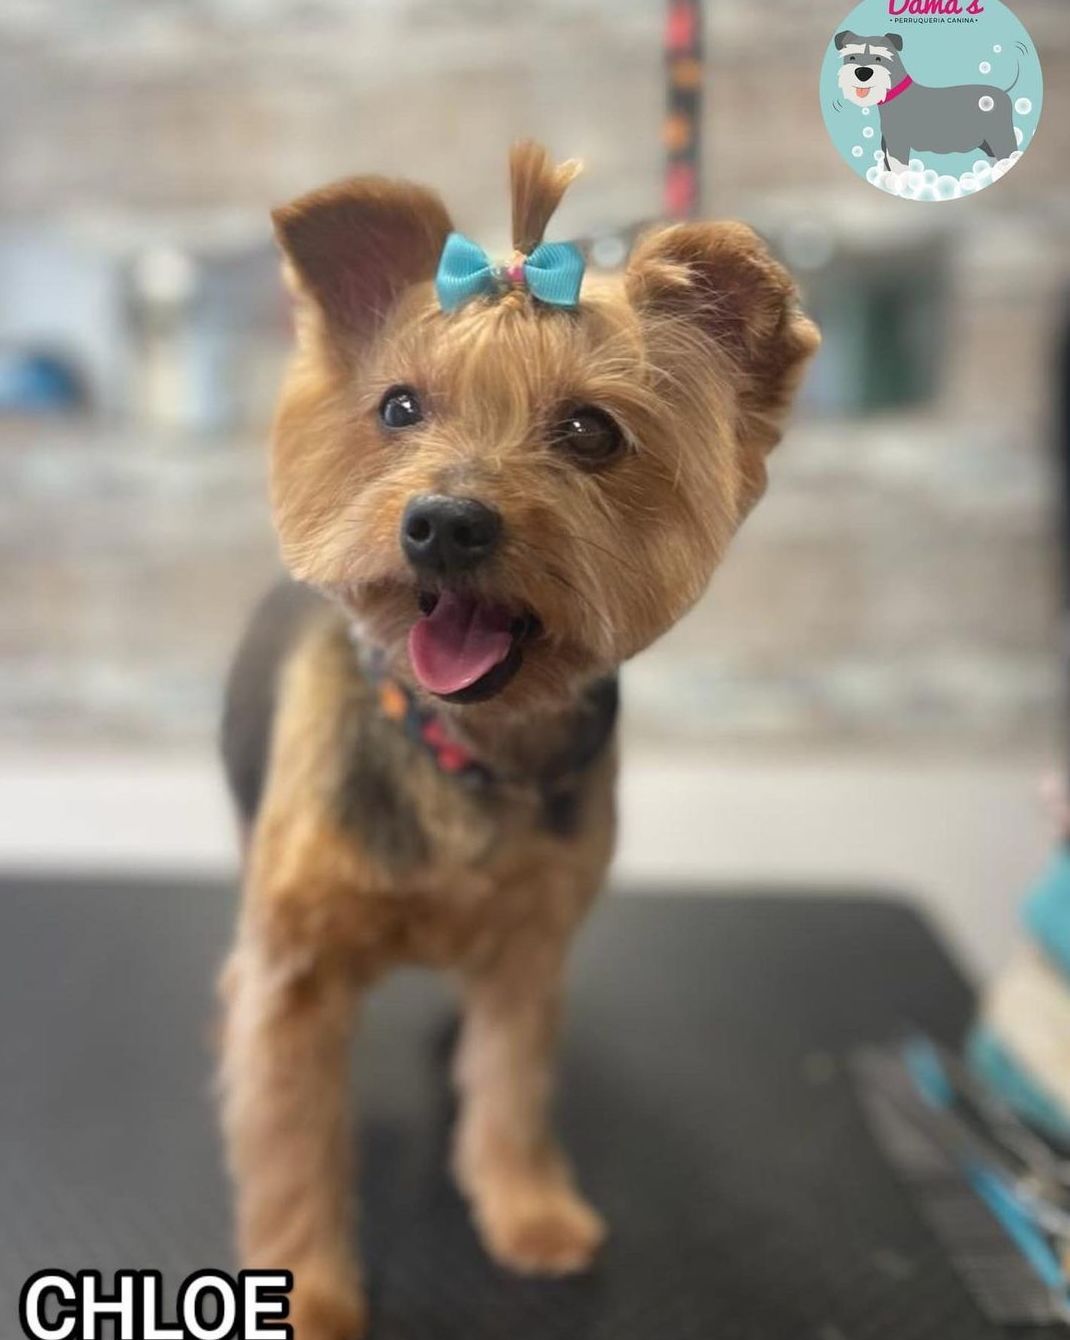 Foto 95 de Peluquería canina con todo tipo de tratamientos para tu mascota en  | Dama's